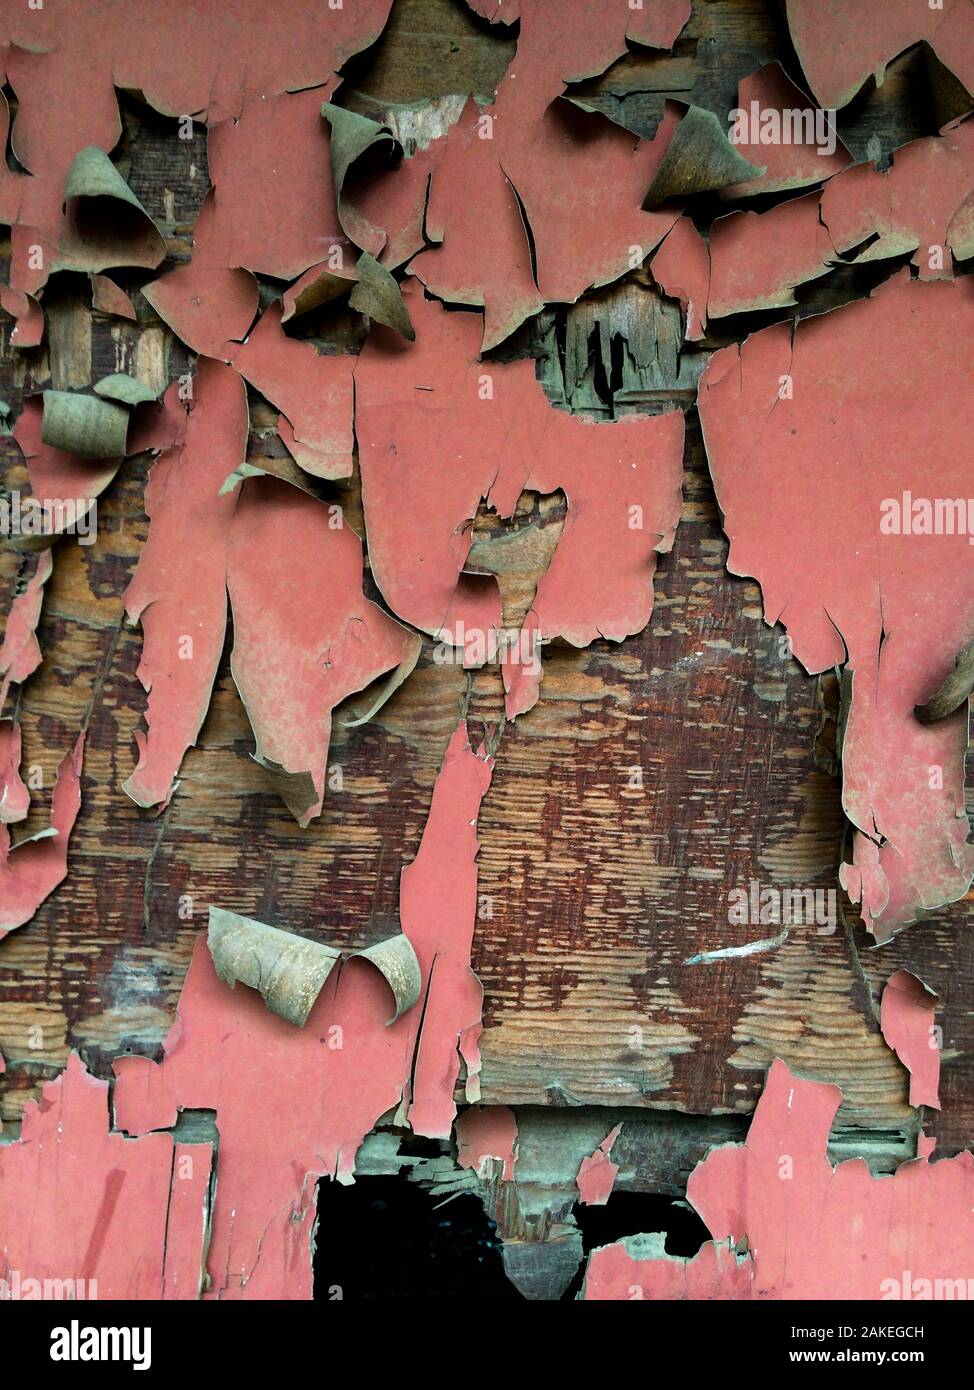 La vernice rossa di cracking e spellatura da parete in una casa abbandonata. Foto Stock